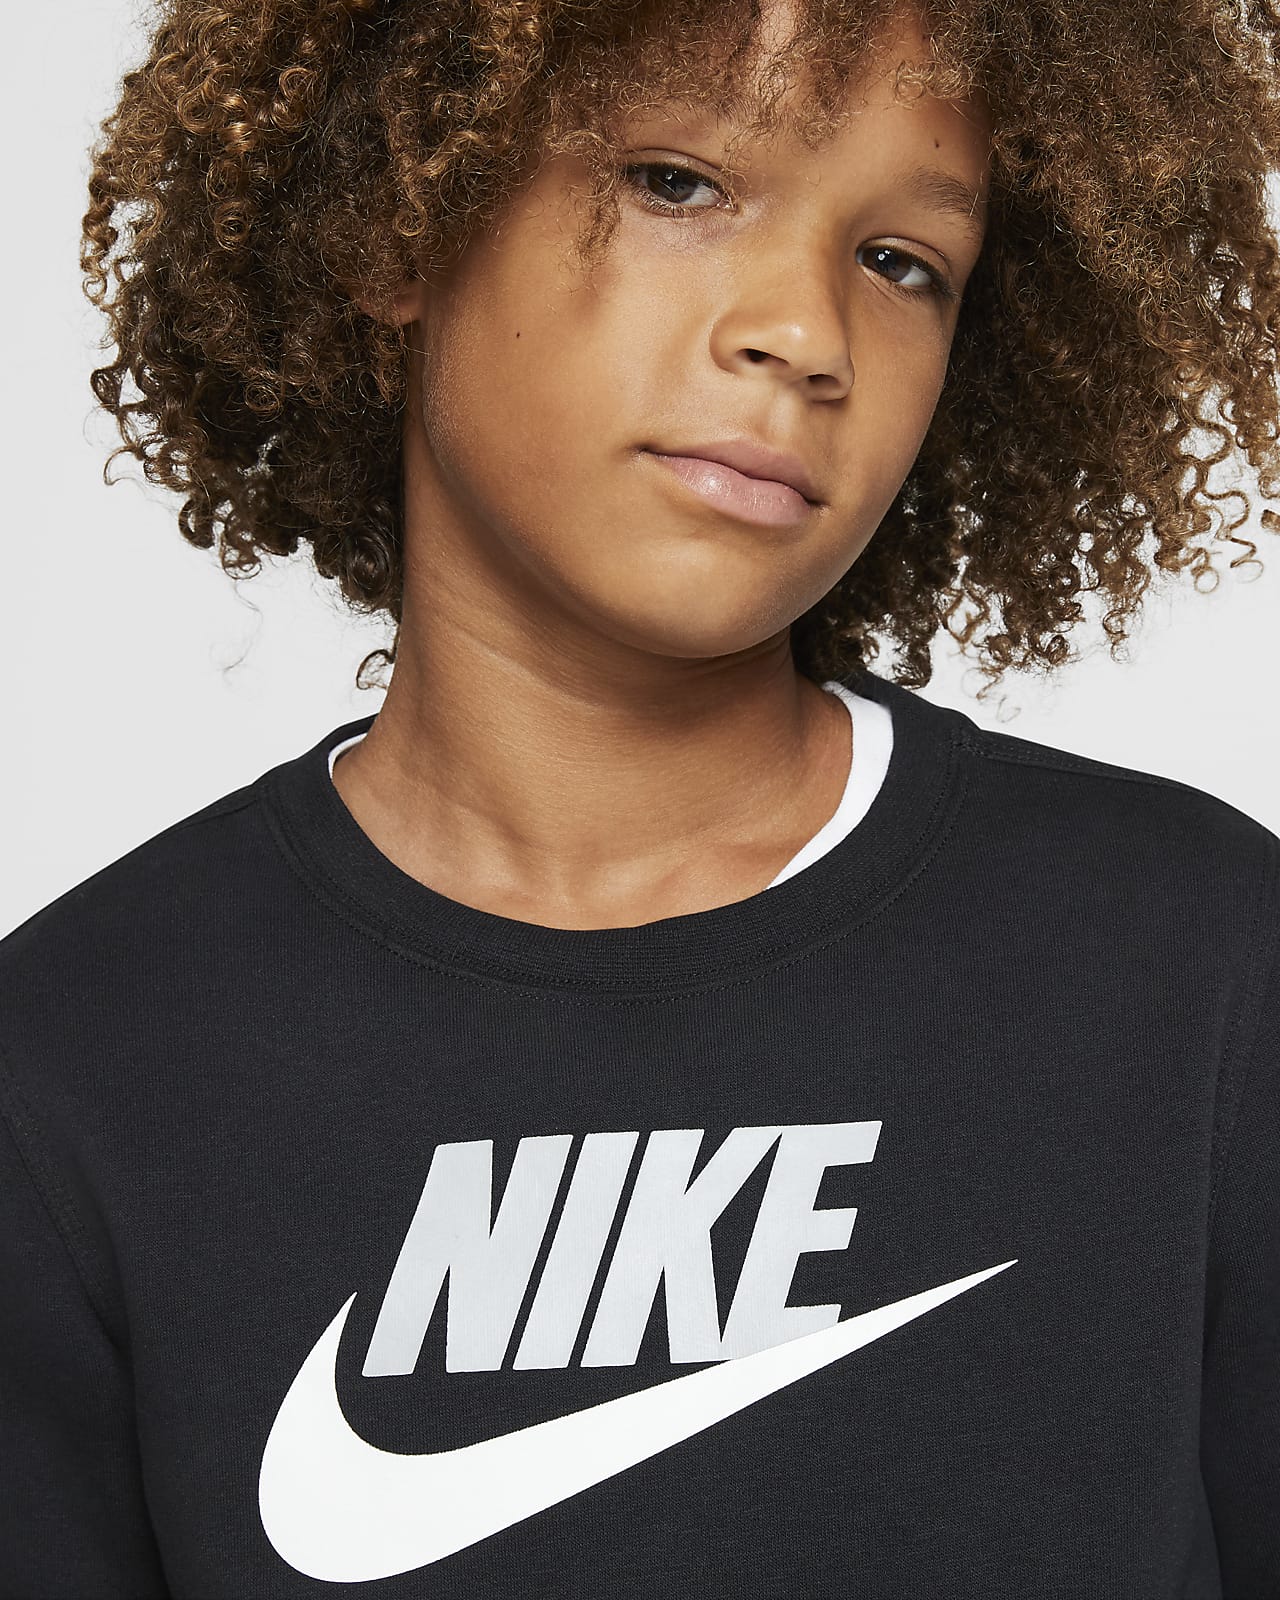 werkwoord zomer Conclusie Nike Sportswear Club Fleece Big Kids' (Boys') Crew. Nike.com